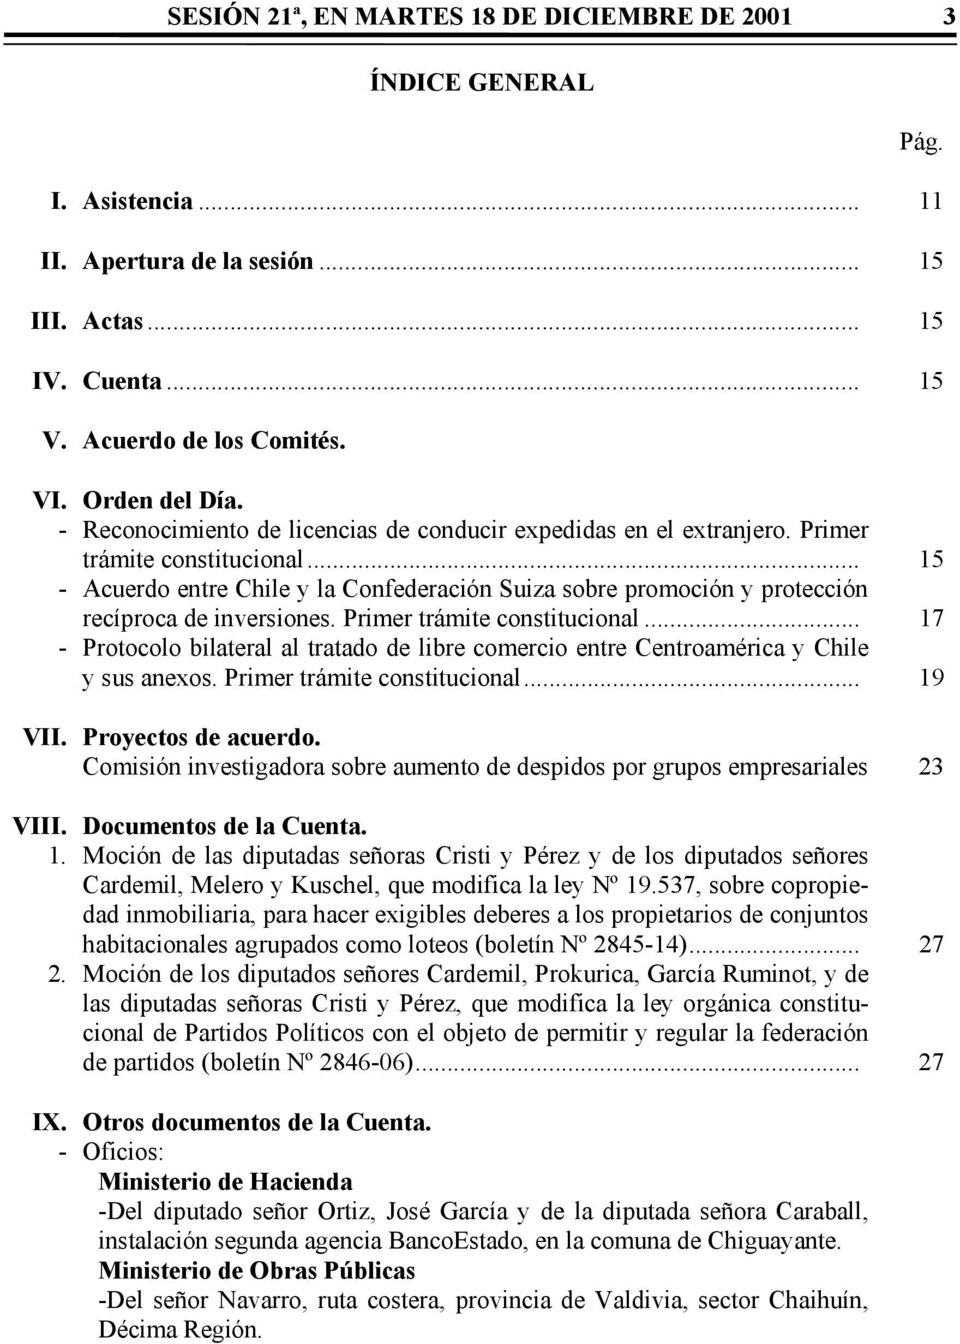 .. 15 - Acuerdo entre Chile y la Confederación Suiza sobre promoción y protección recíproca de inversiones. Primer trámite constitucional.